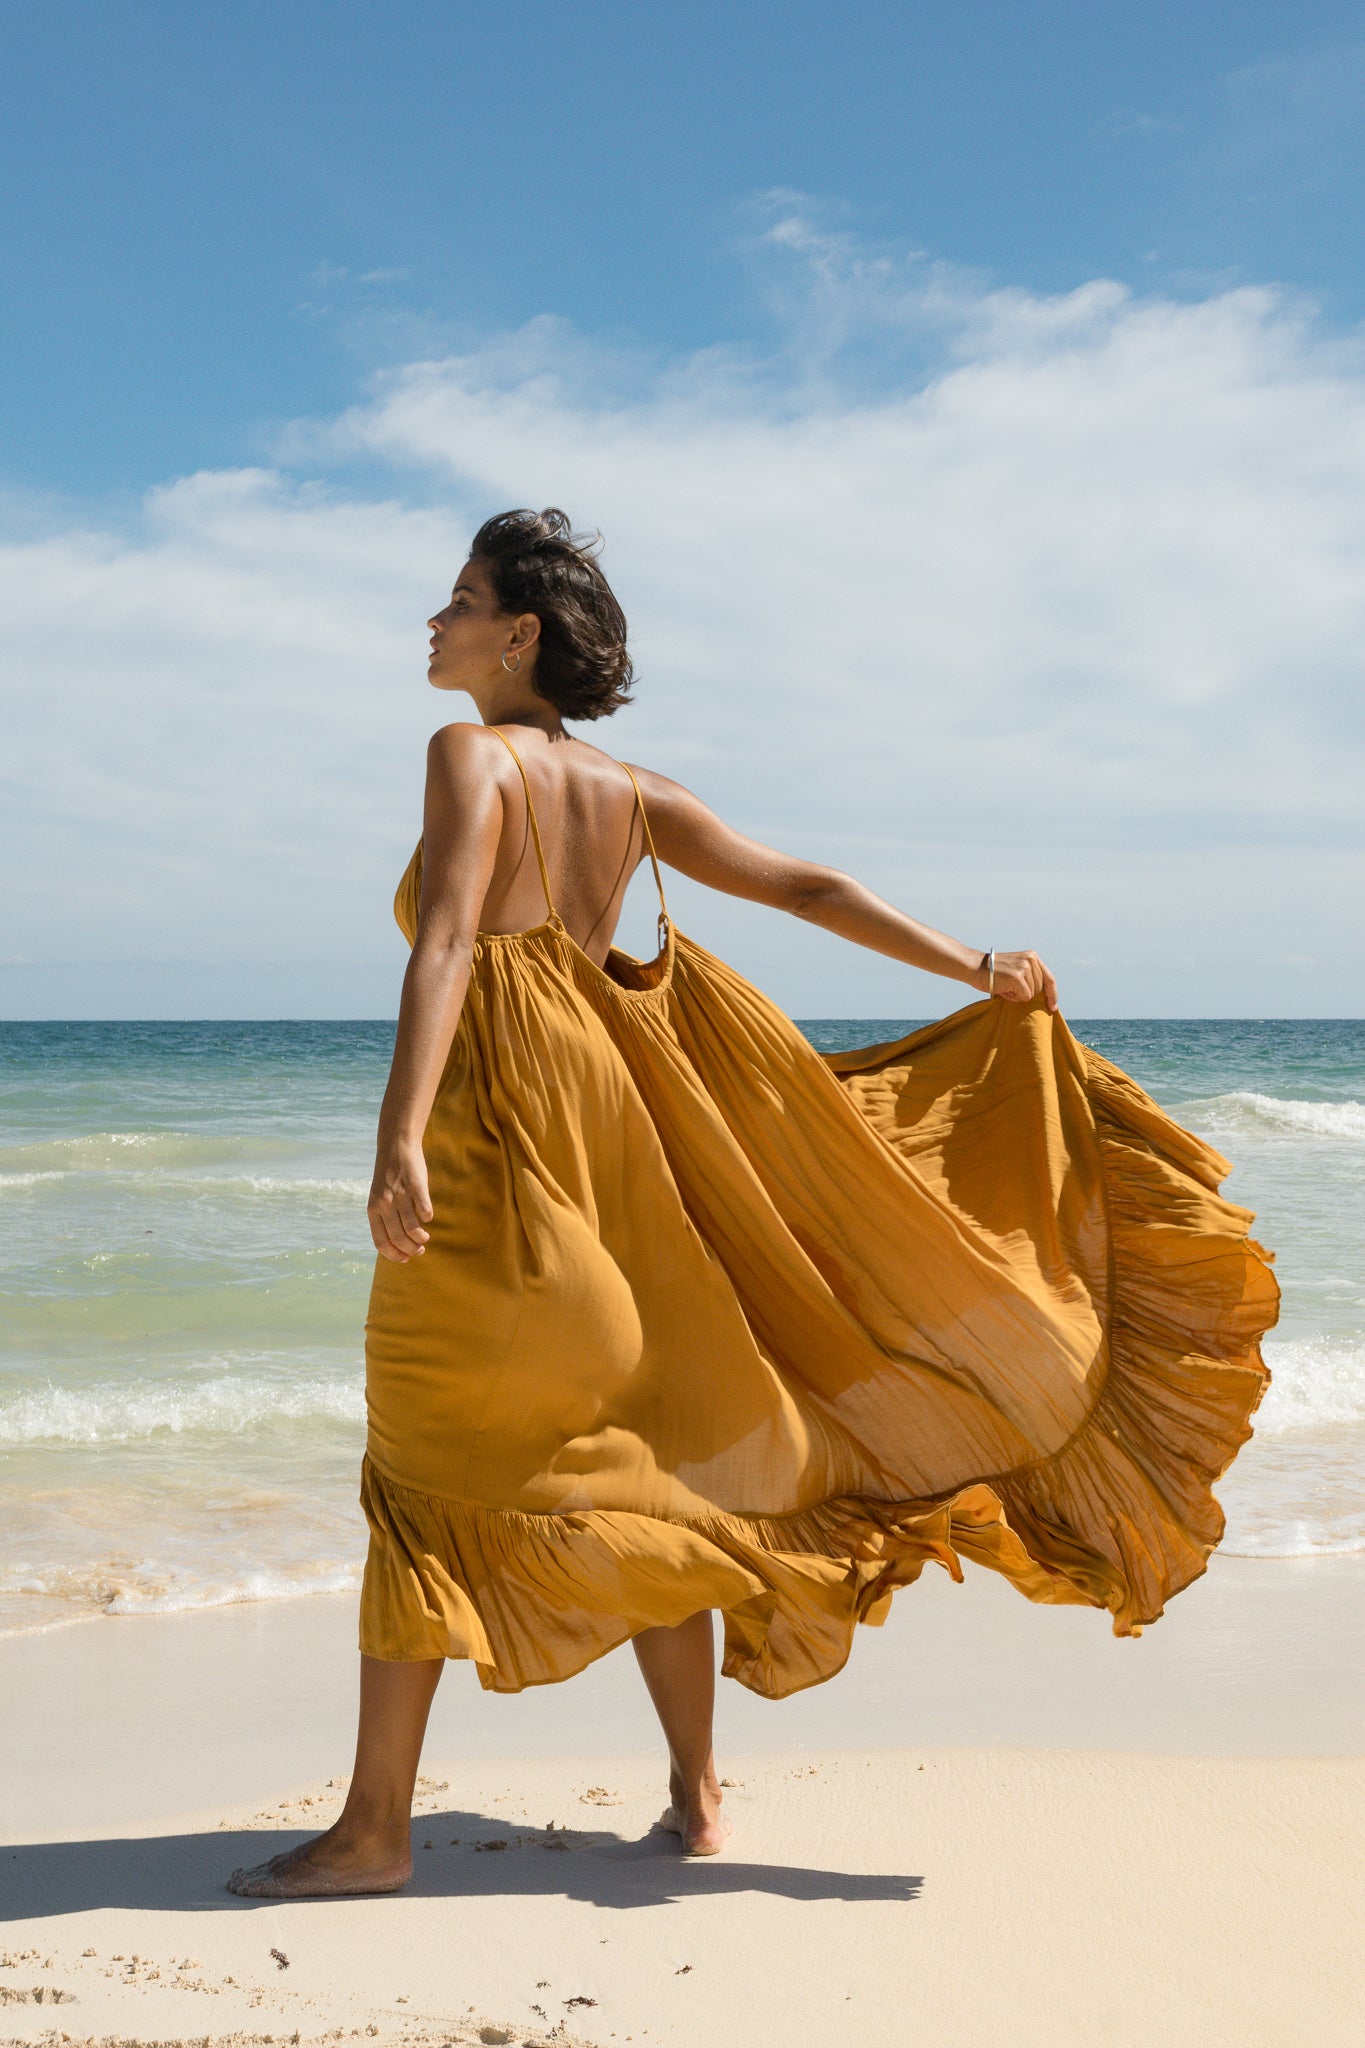 beach maxi dress